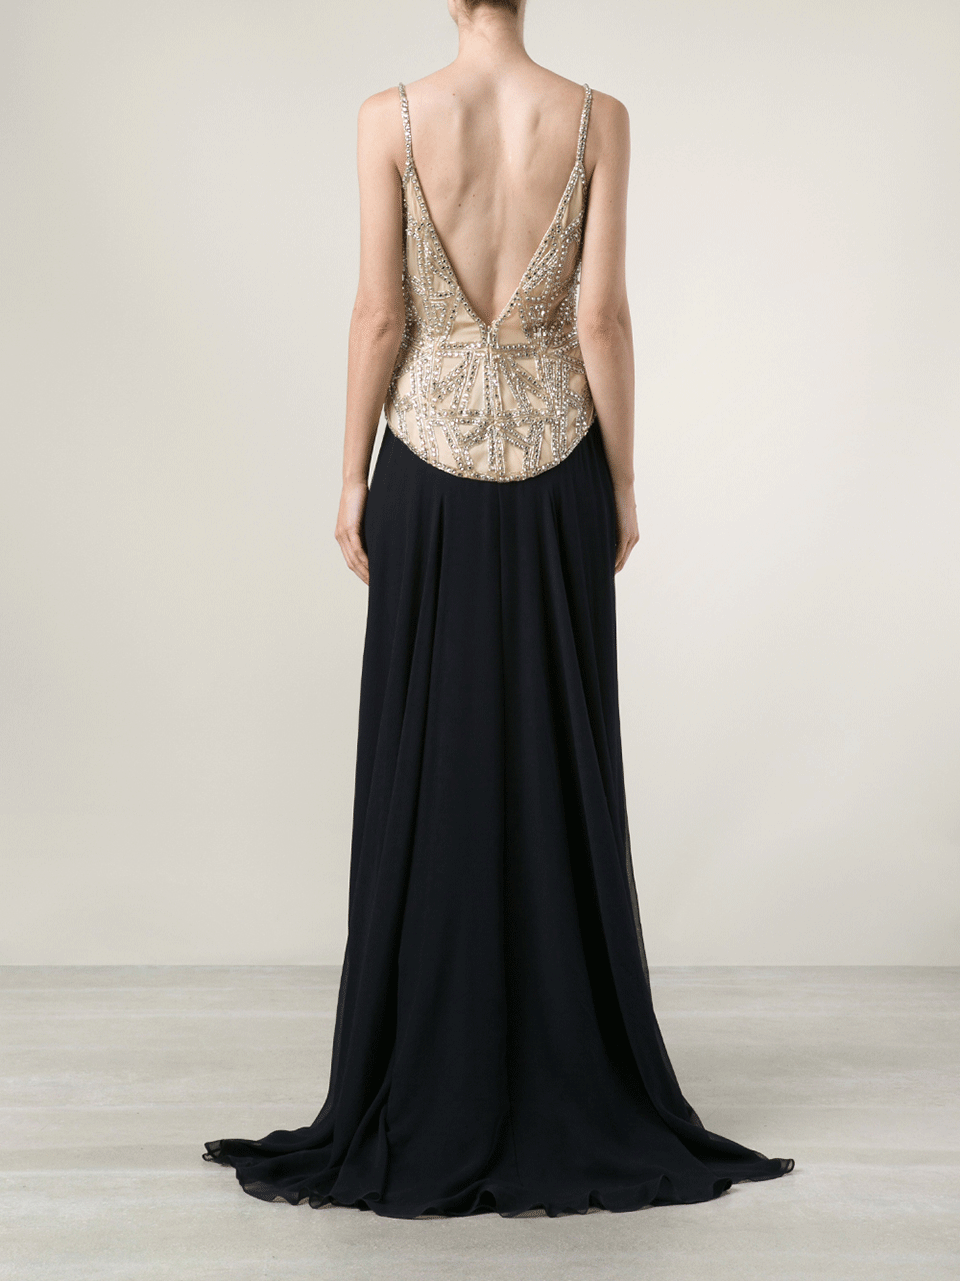 NAEEM KHAN-Embellished Top Gown-BLACK